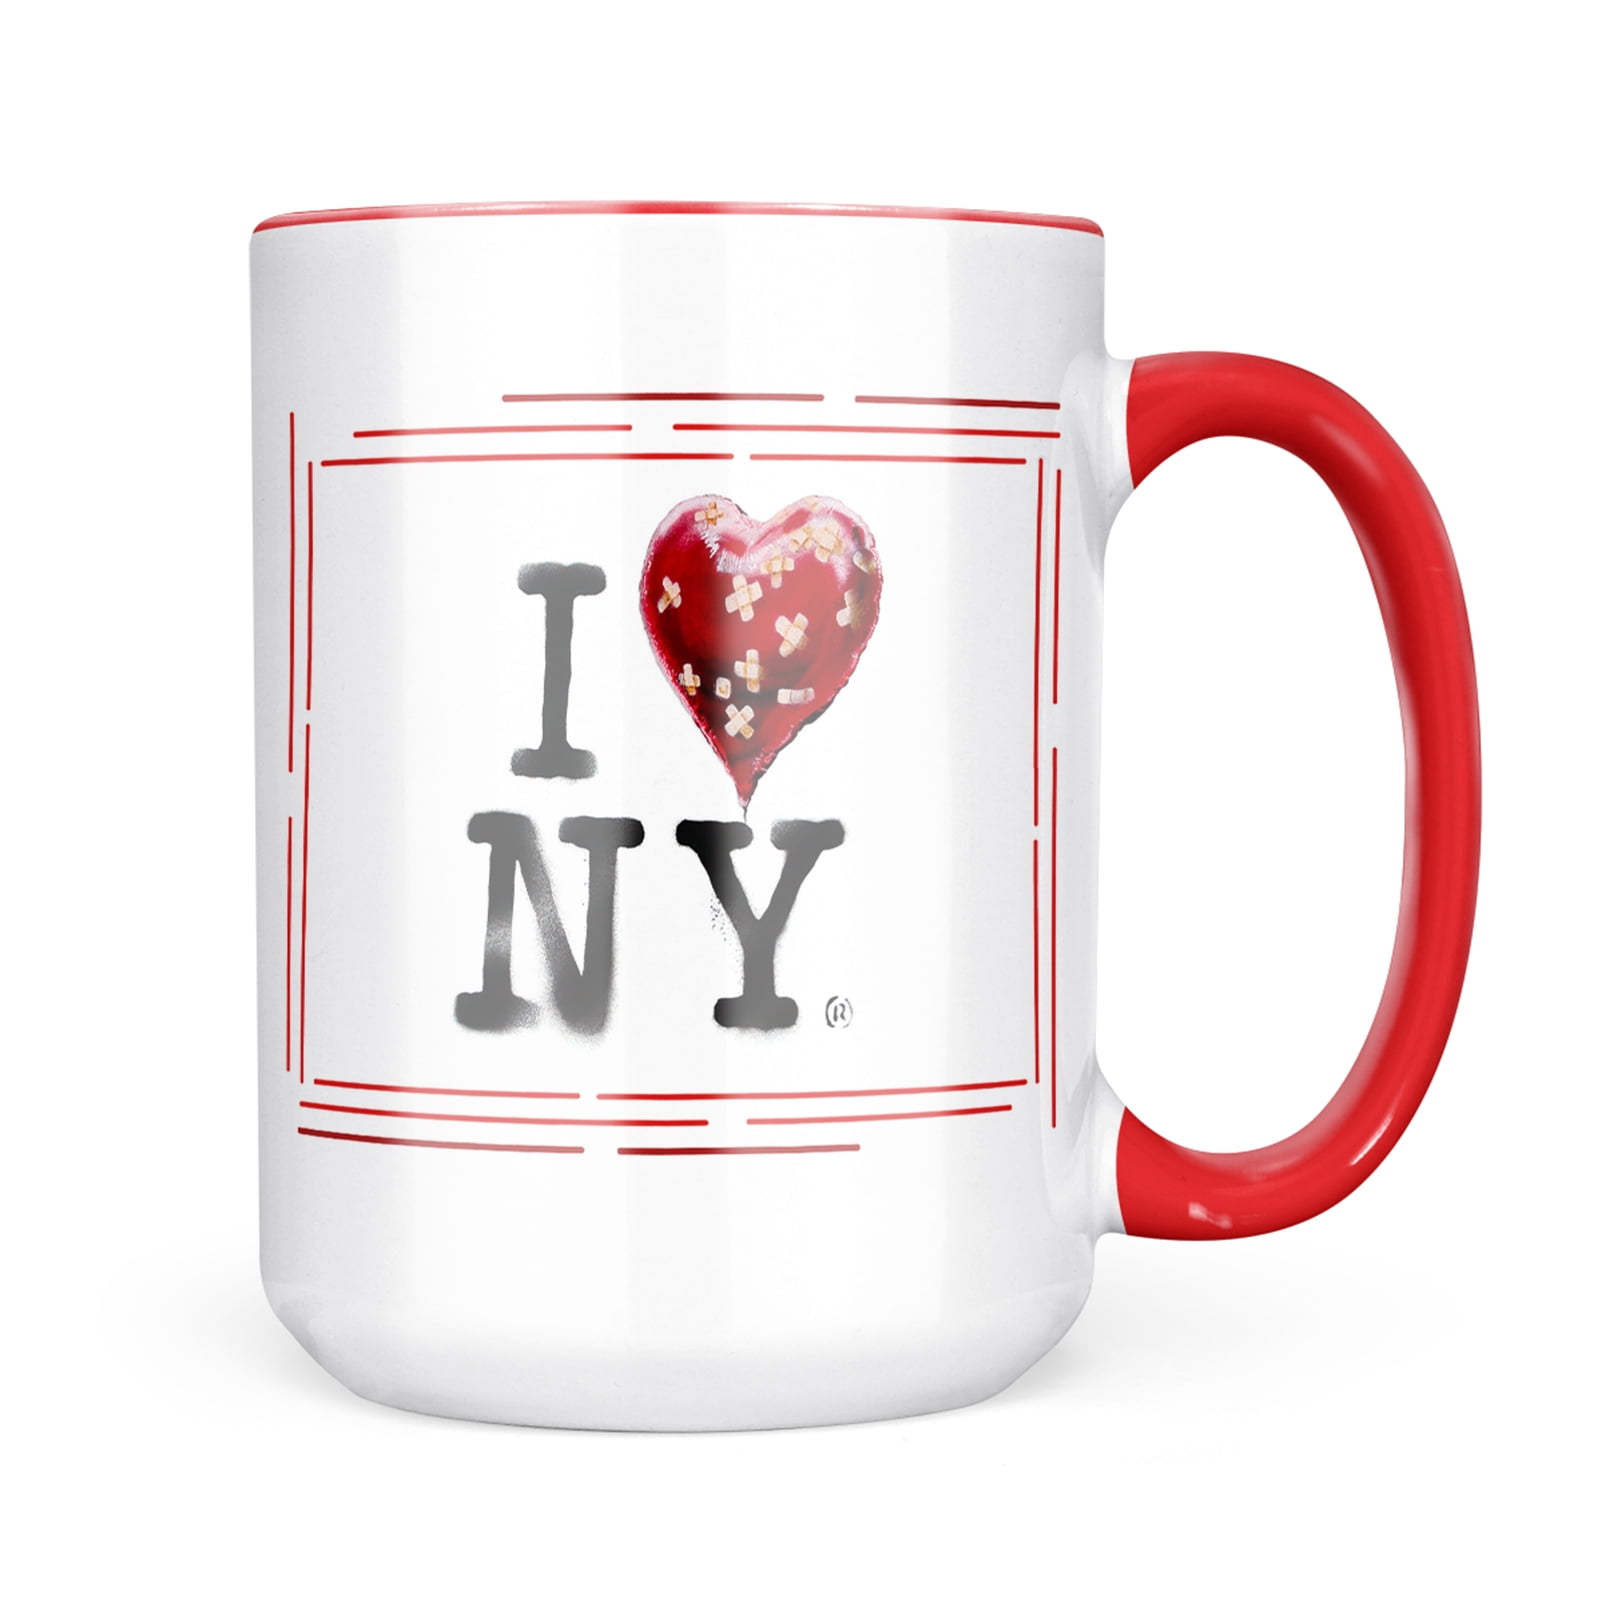 TRAVEL COFFEE MUG BLACK SPATTER I LOVE HEART NY NEW YORK 16 OUNCE